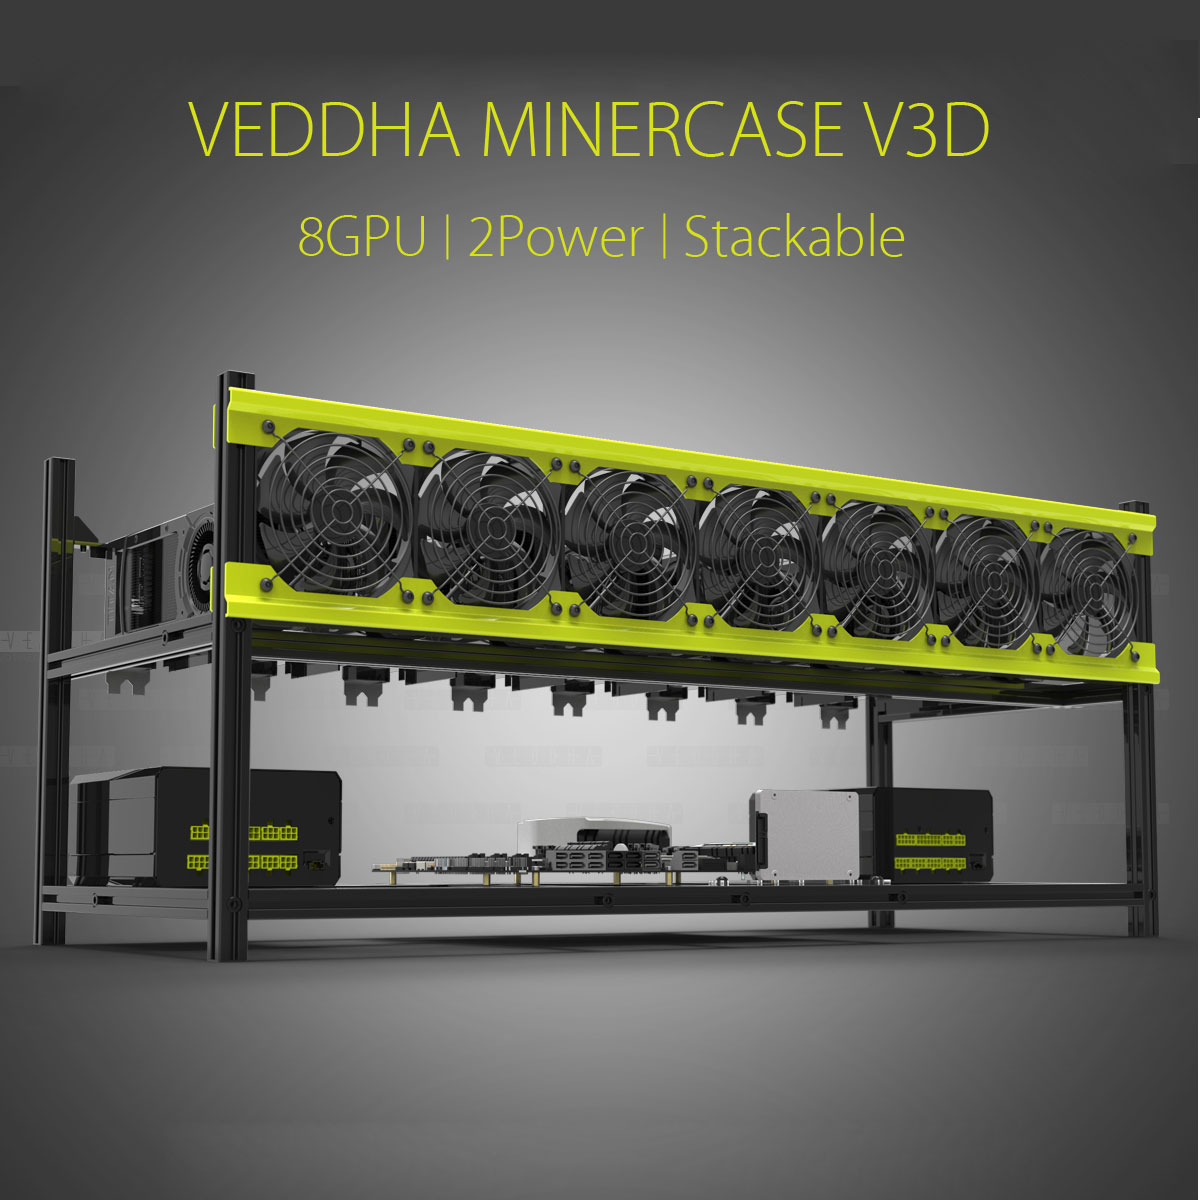 Open-Air-Mining-Miner-Frame-Stackable-Case-For-VEDDHA-V3D-8-GPU-ETH-ZEC-ZCash-1248549